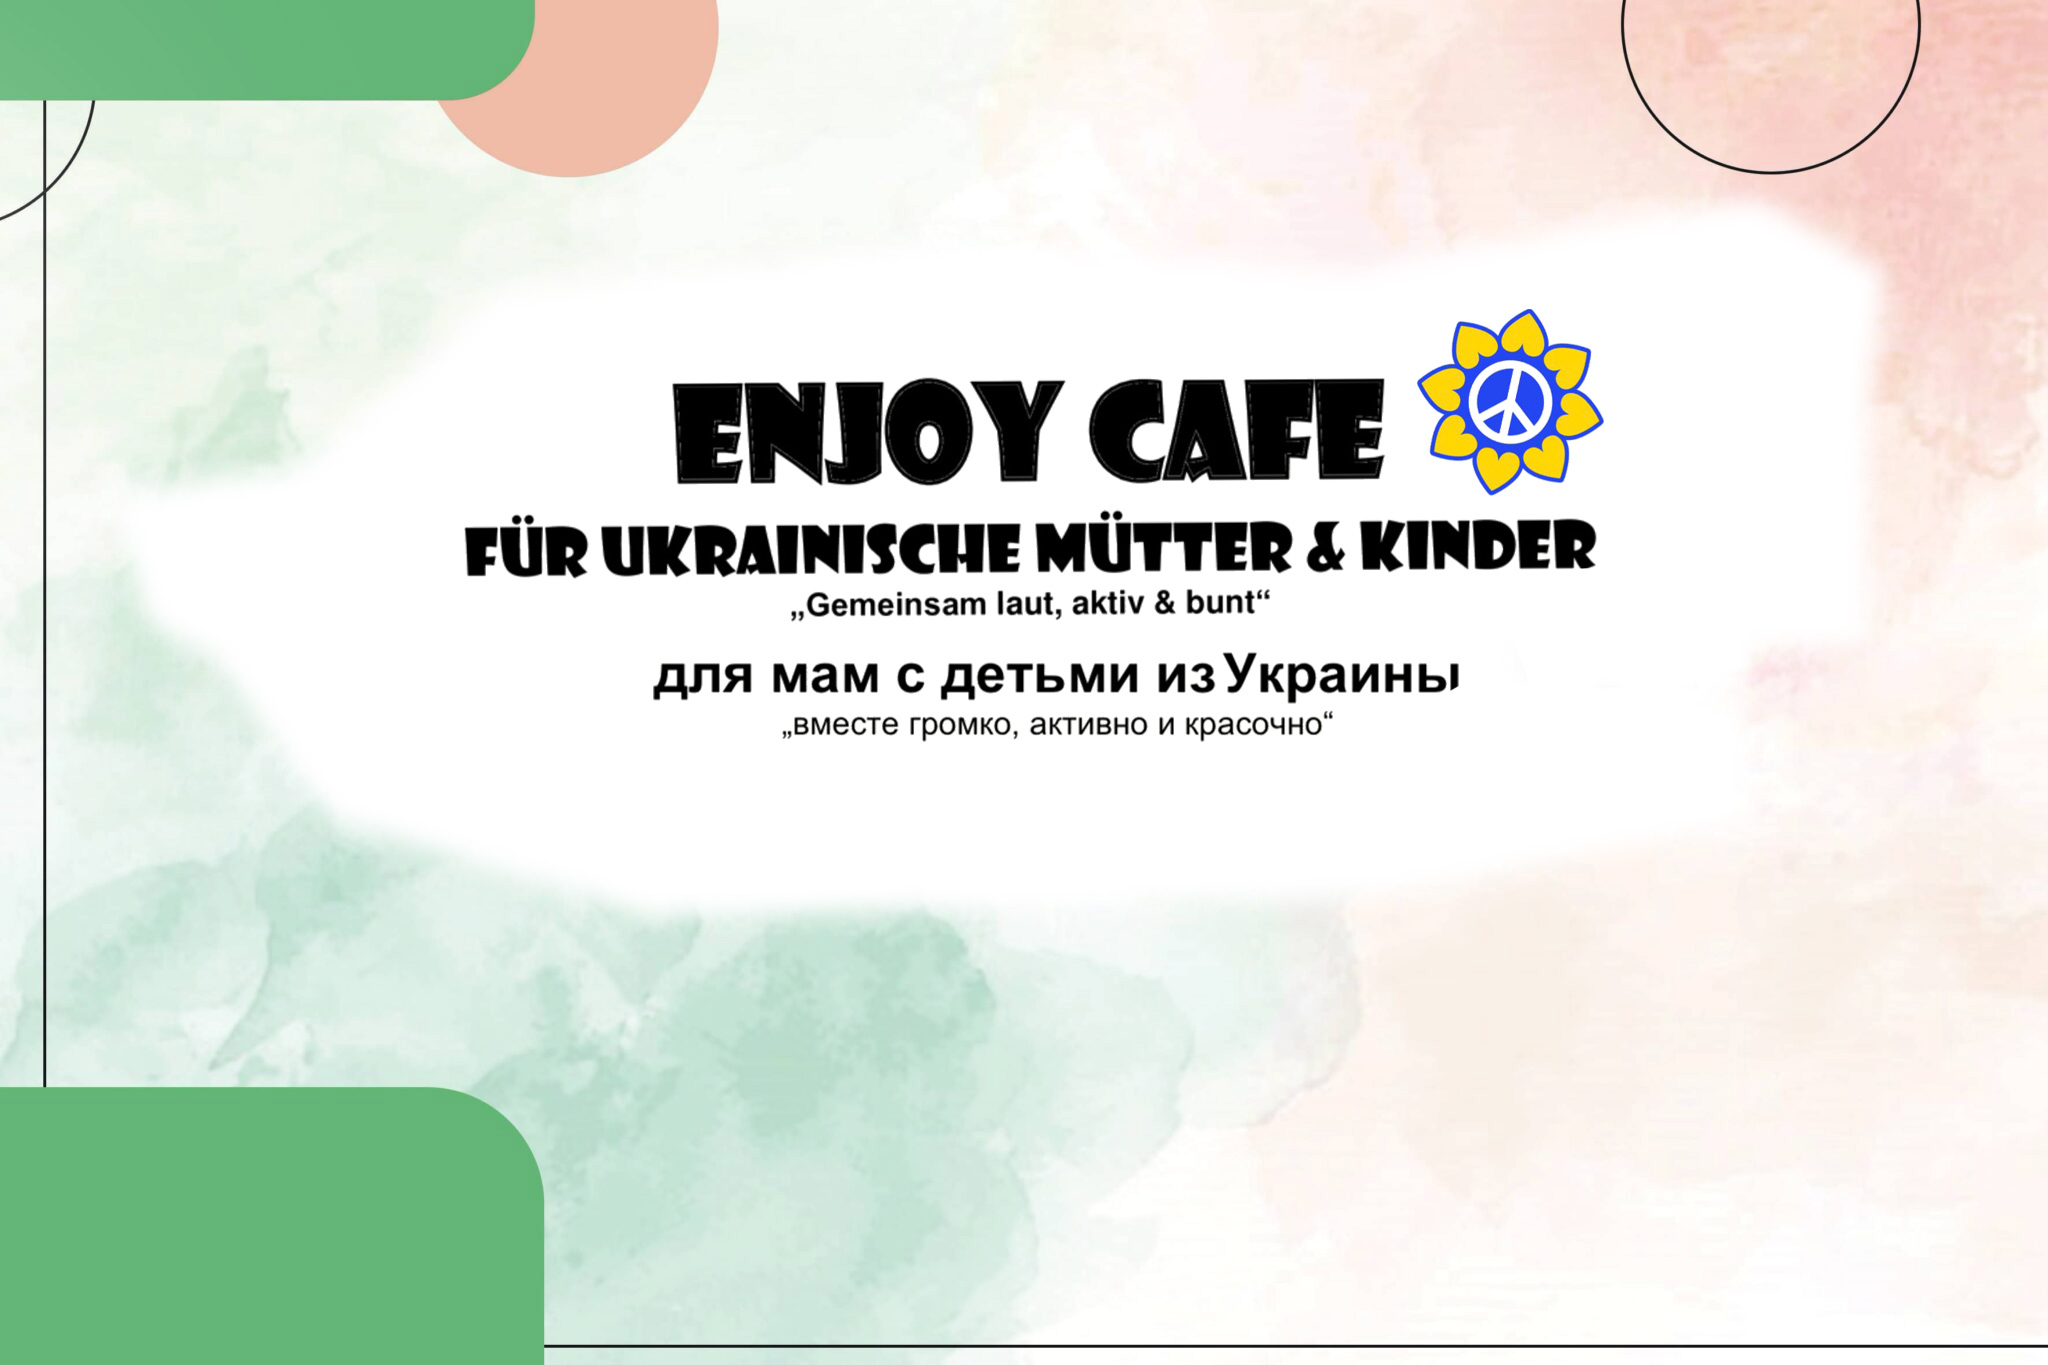 Enjoy Café für ukrainische Mütter & Kinder